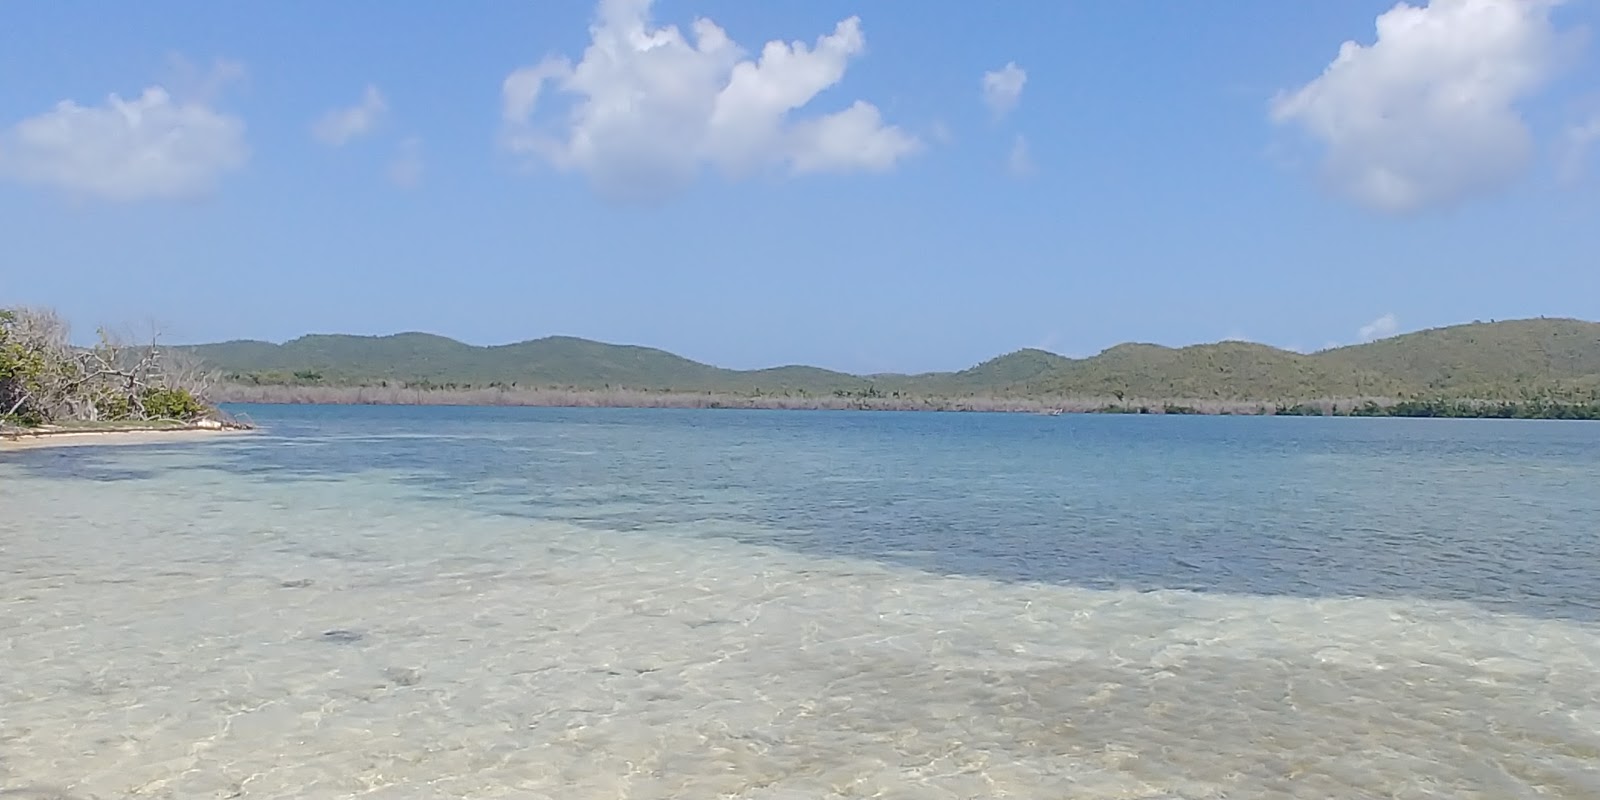 Zdjęcie Blue beach - popularne miejsce wśród znawców relaksu